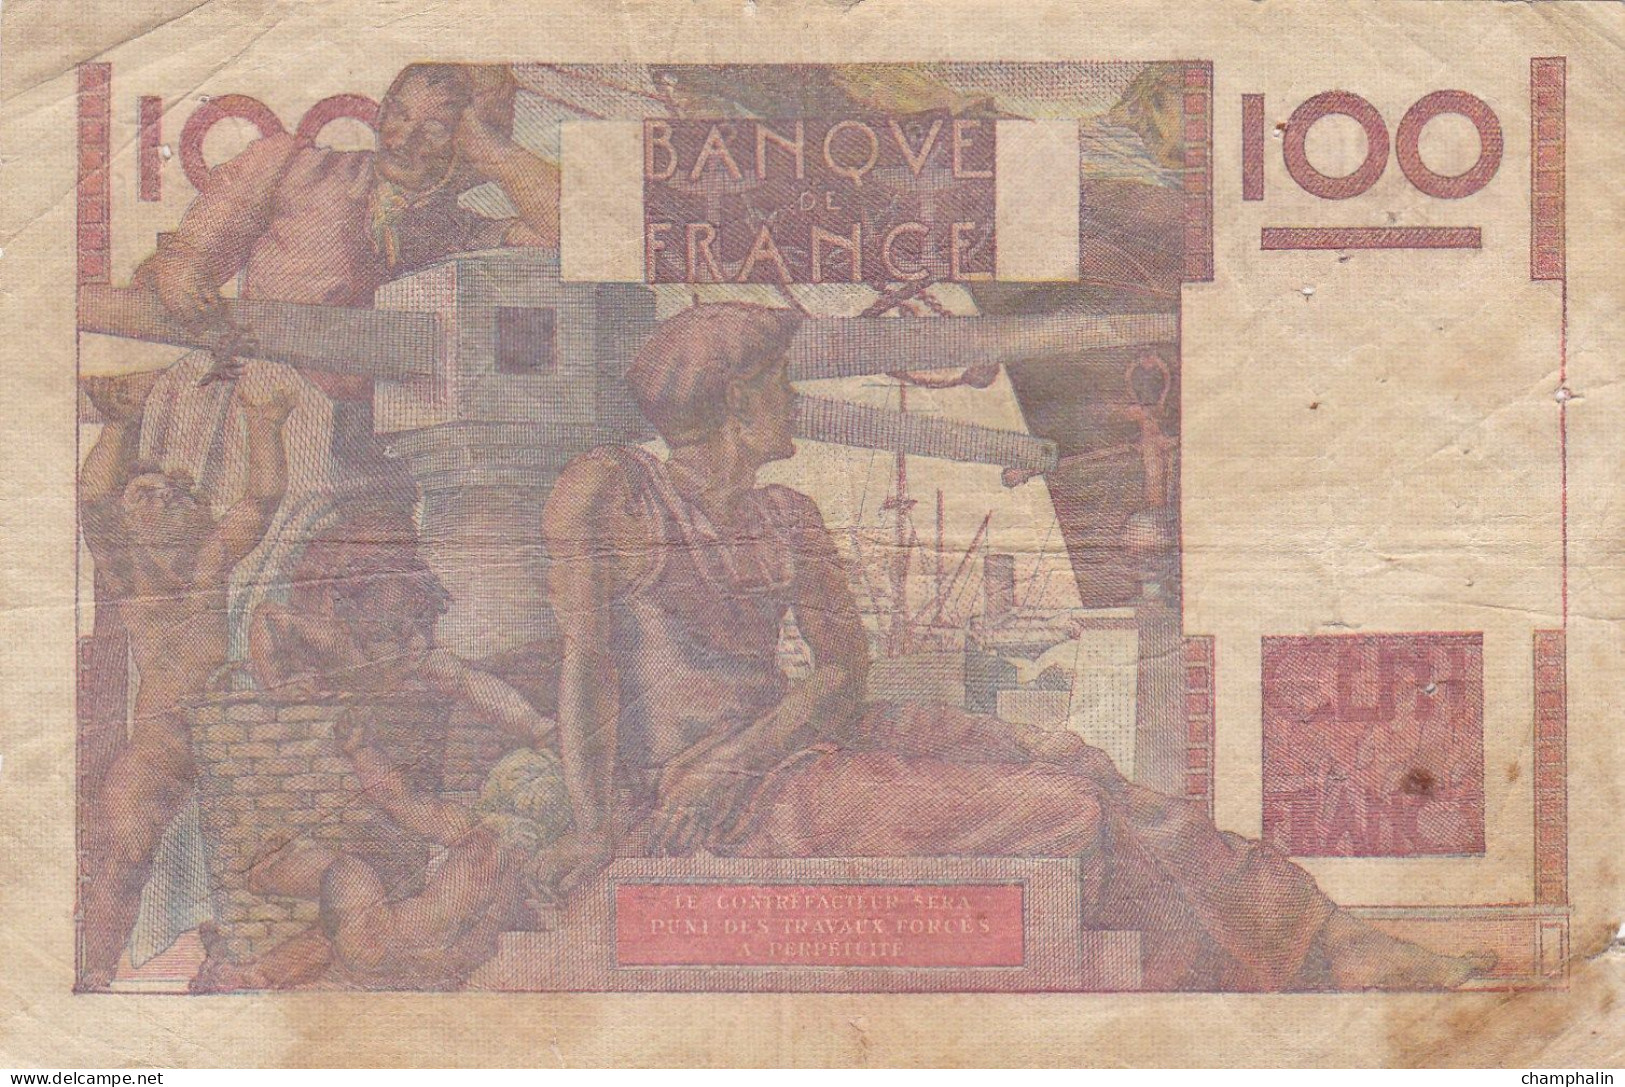 France - Billet De 100 Francs Type Jeune Paysan - 3 Avril 1952 - 100 F 1945-1954 ''Jeune Paysan''